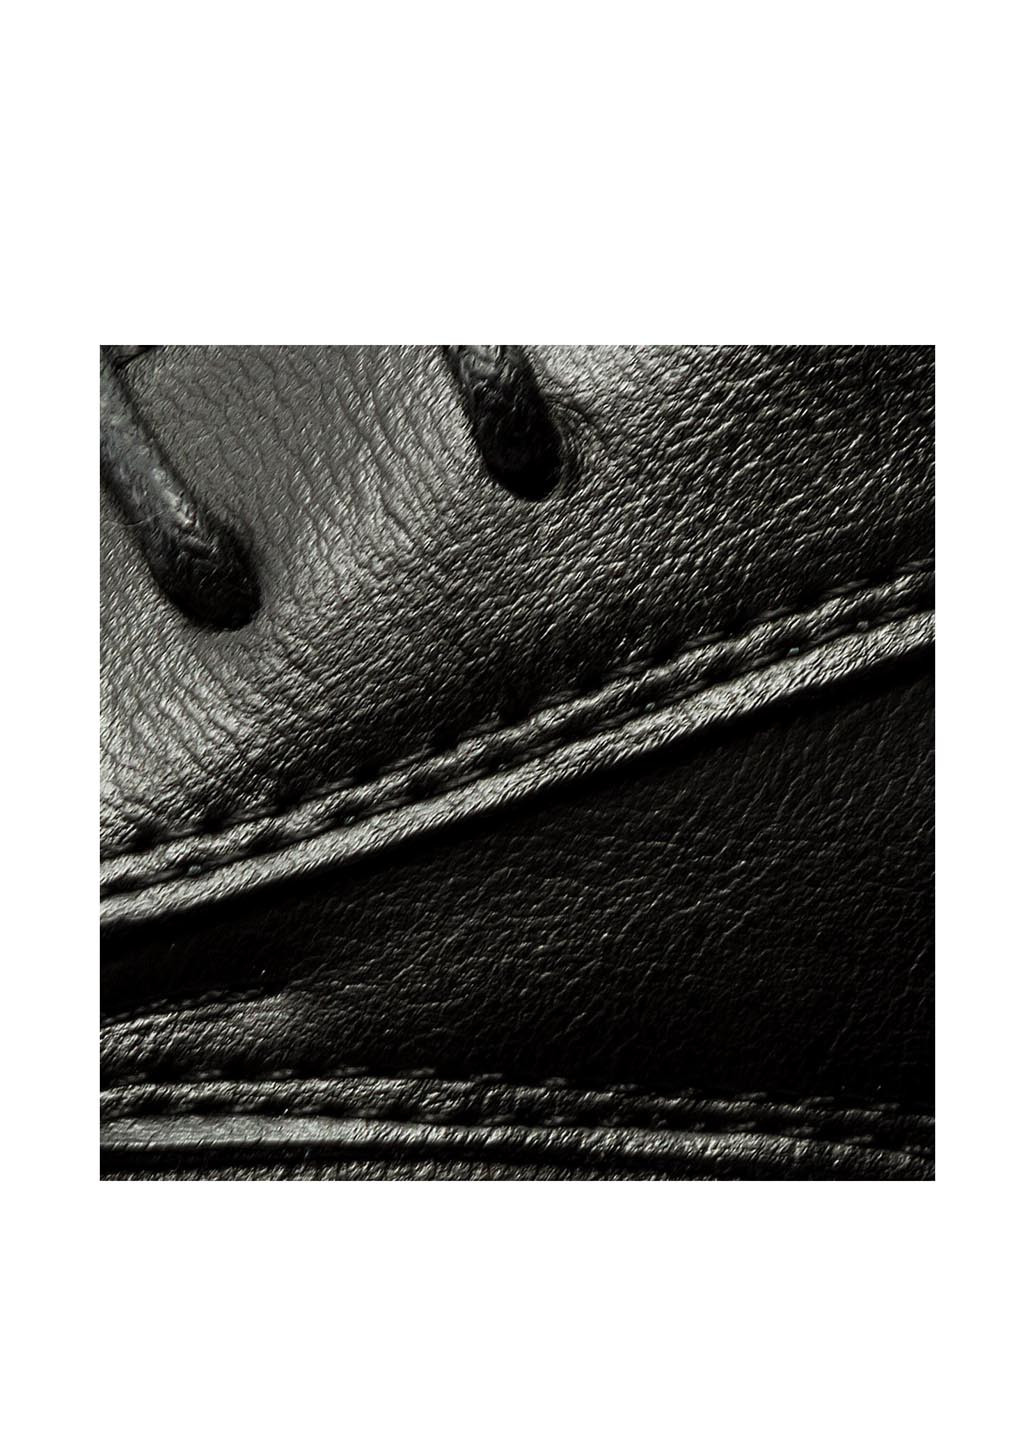 Черные напівчеревики со шнурками Vapiano